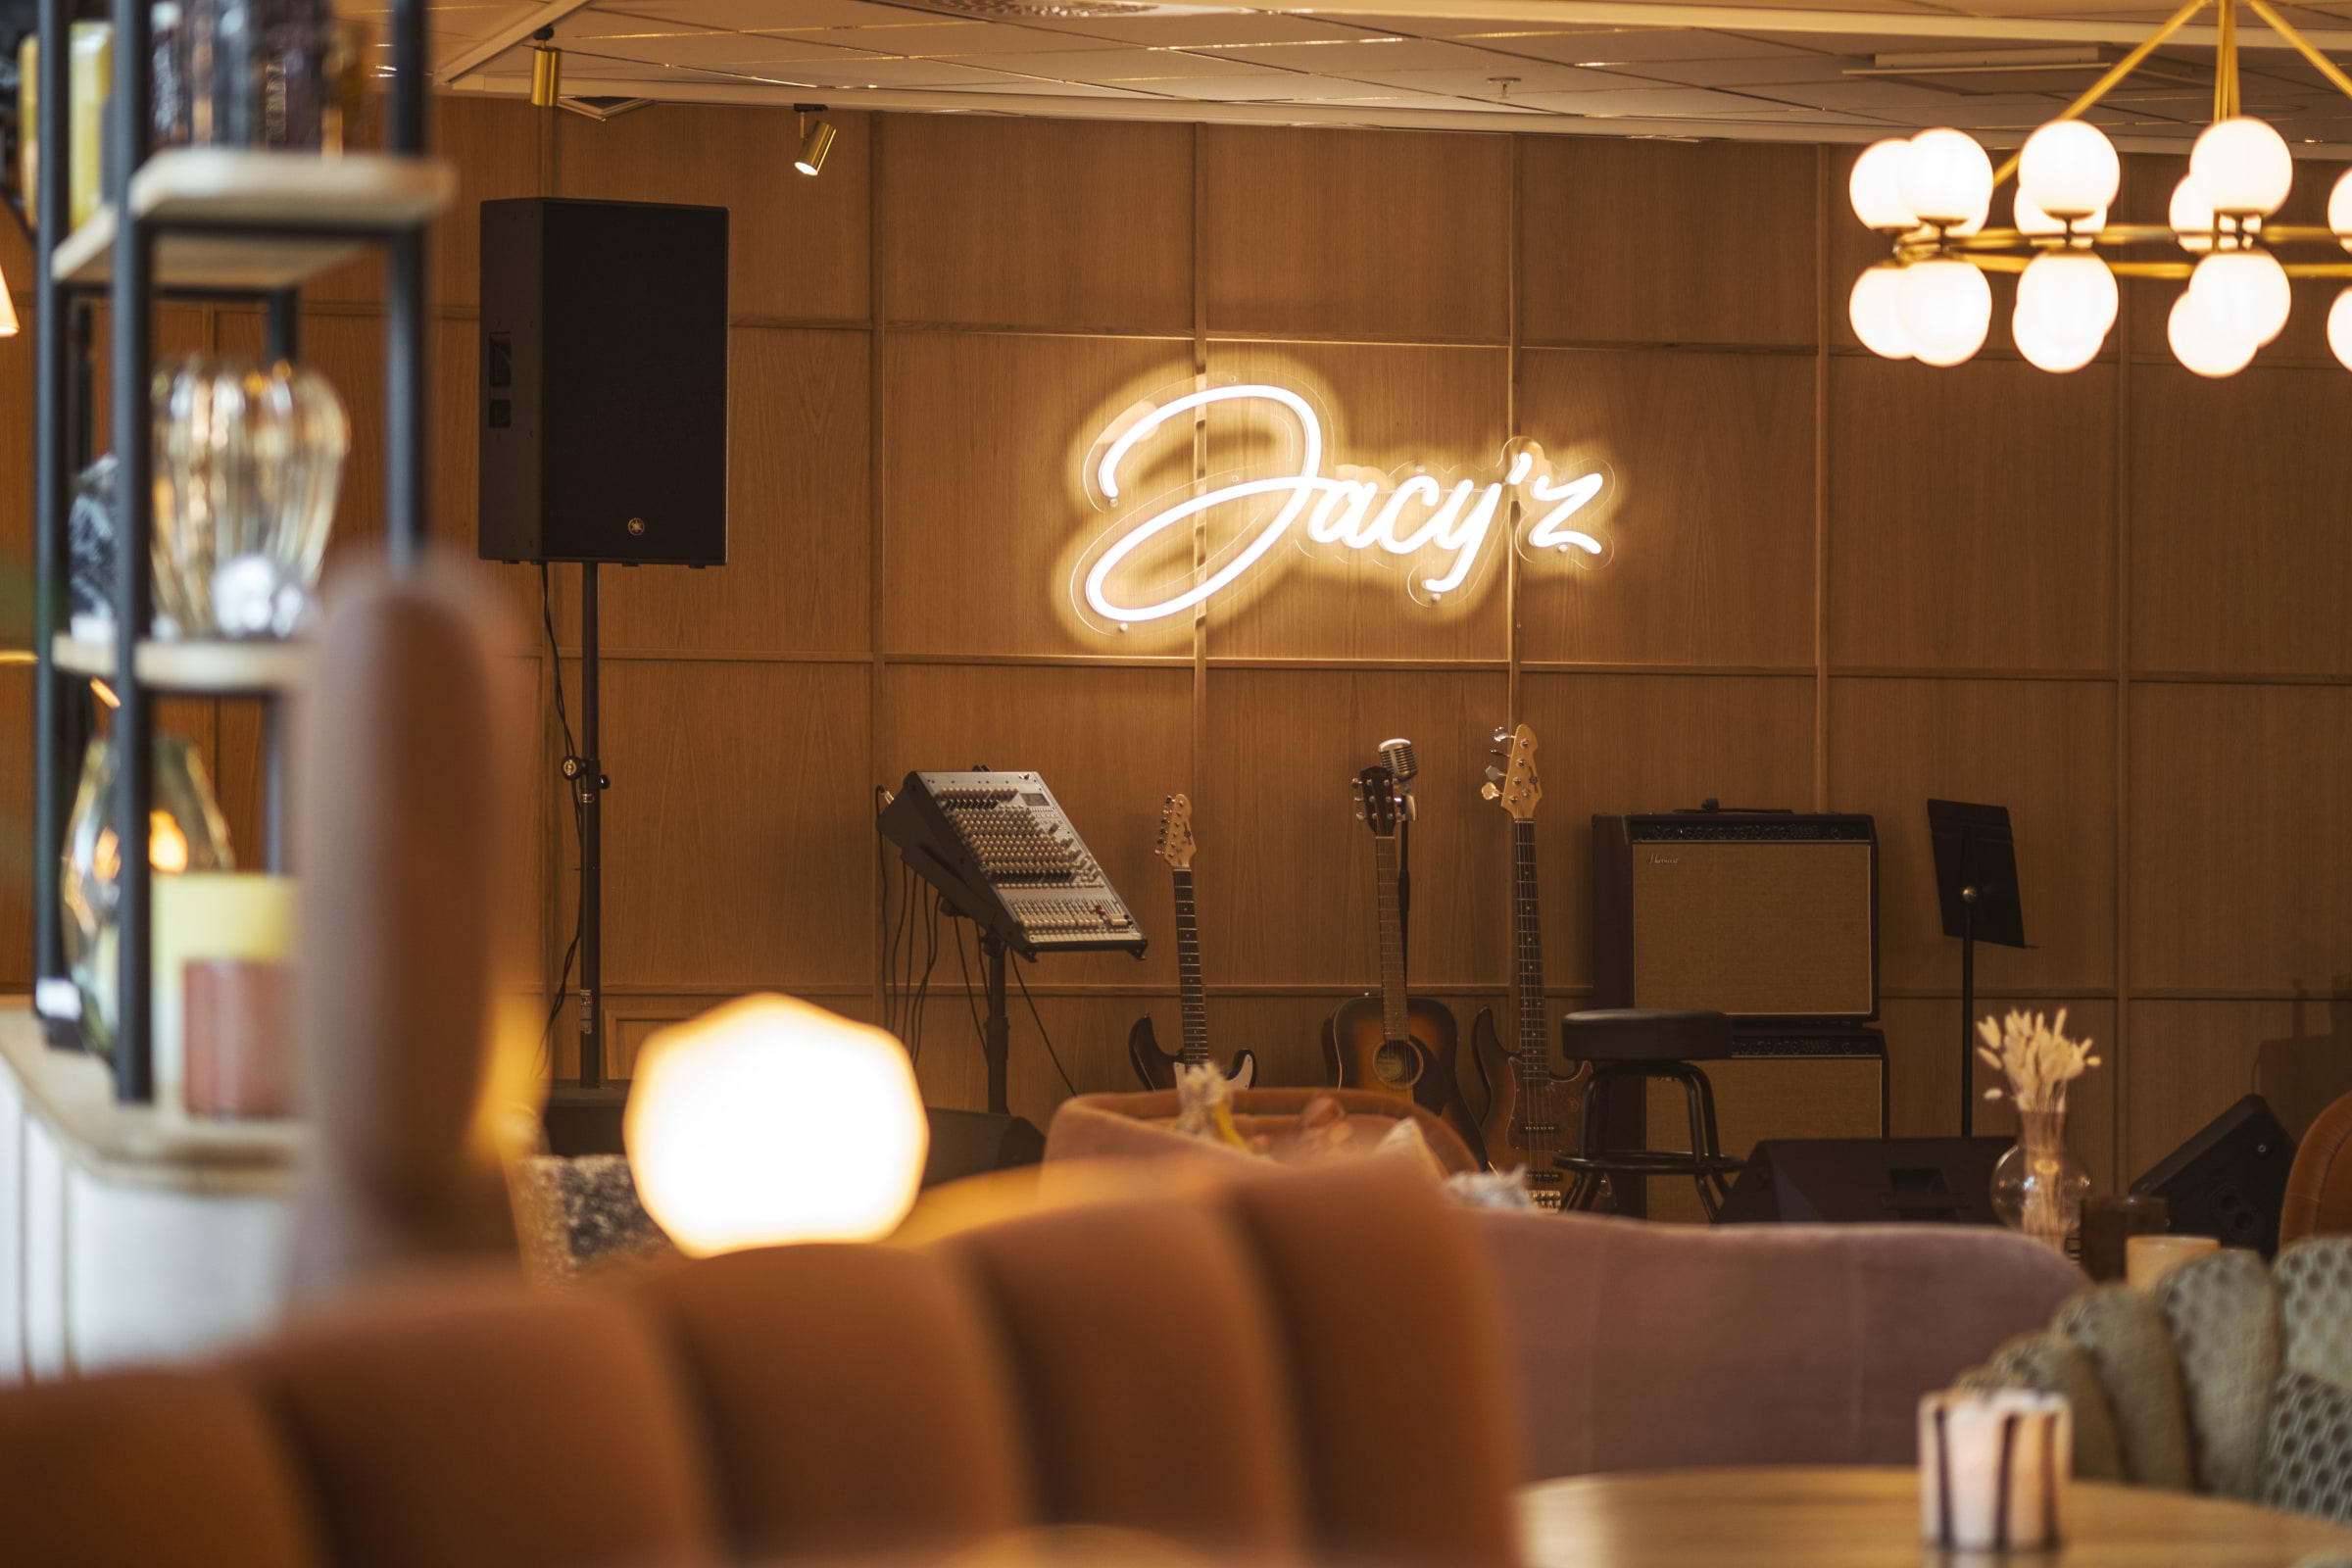 Jacy'z Hotel & Resort utses till Sveriges bästa affärshotell